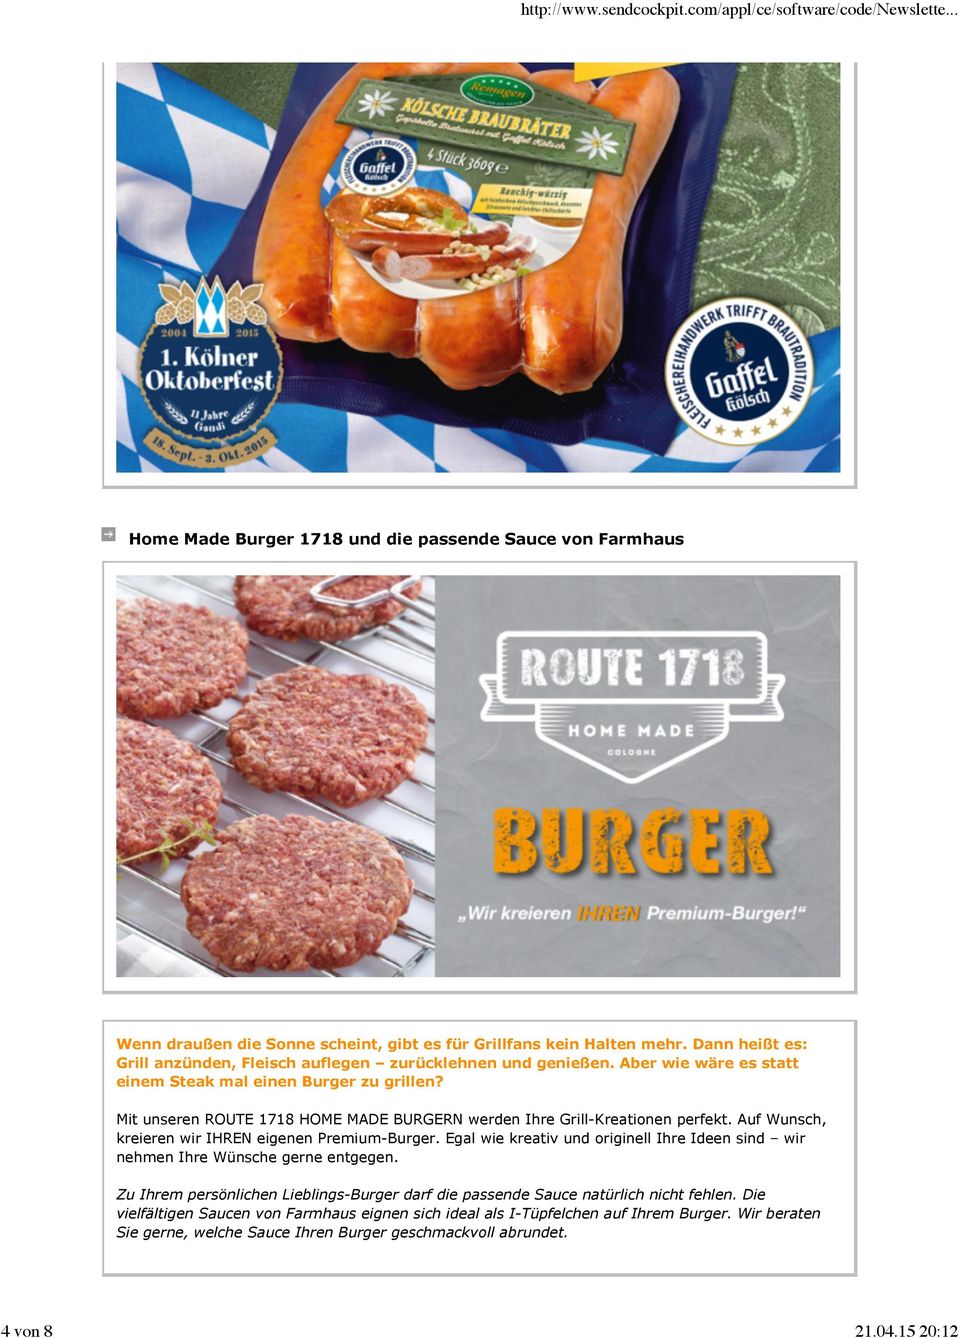 Mit unseren ROUTE 1718 HOME MADE BURGERN werden Ihre Grill-Kreationen perfekt. Auf Wunsch, kreieren wir IHREN eigenen Premium-Burger.